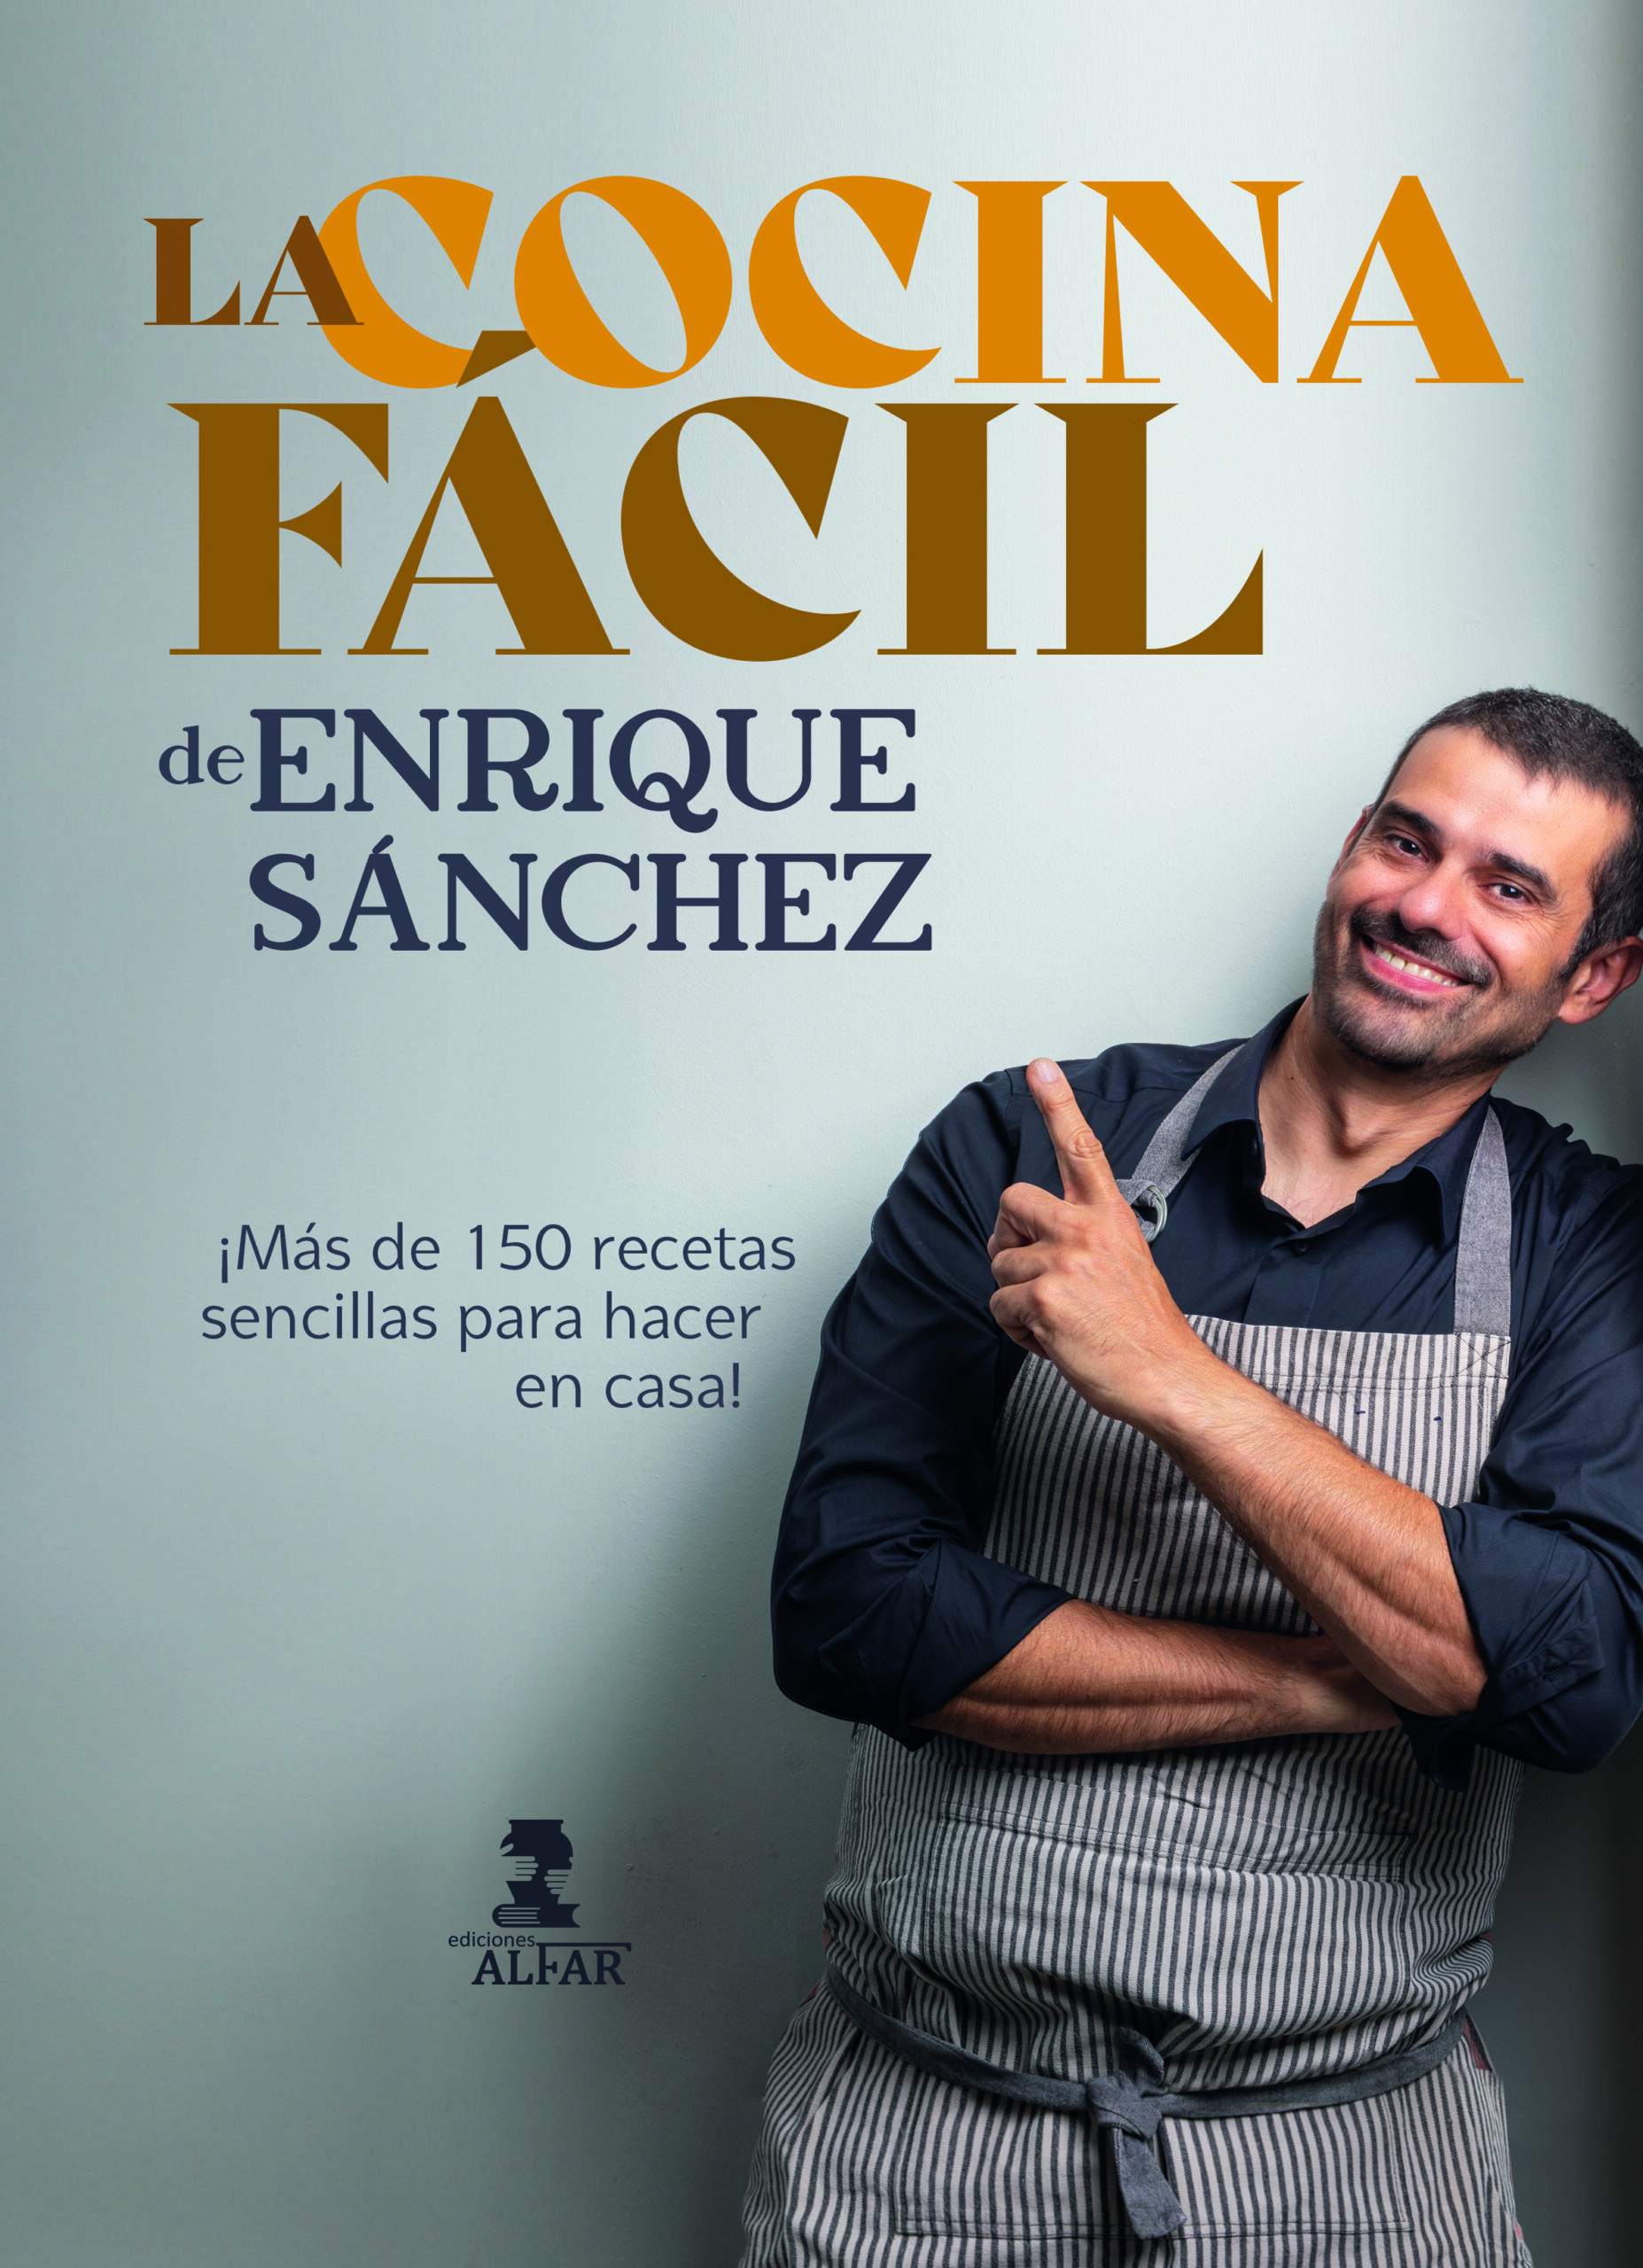 Enrique Sánchez: Padres e hijos pueden disfrutar juntos de la cocina